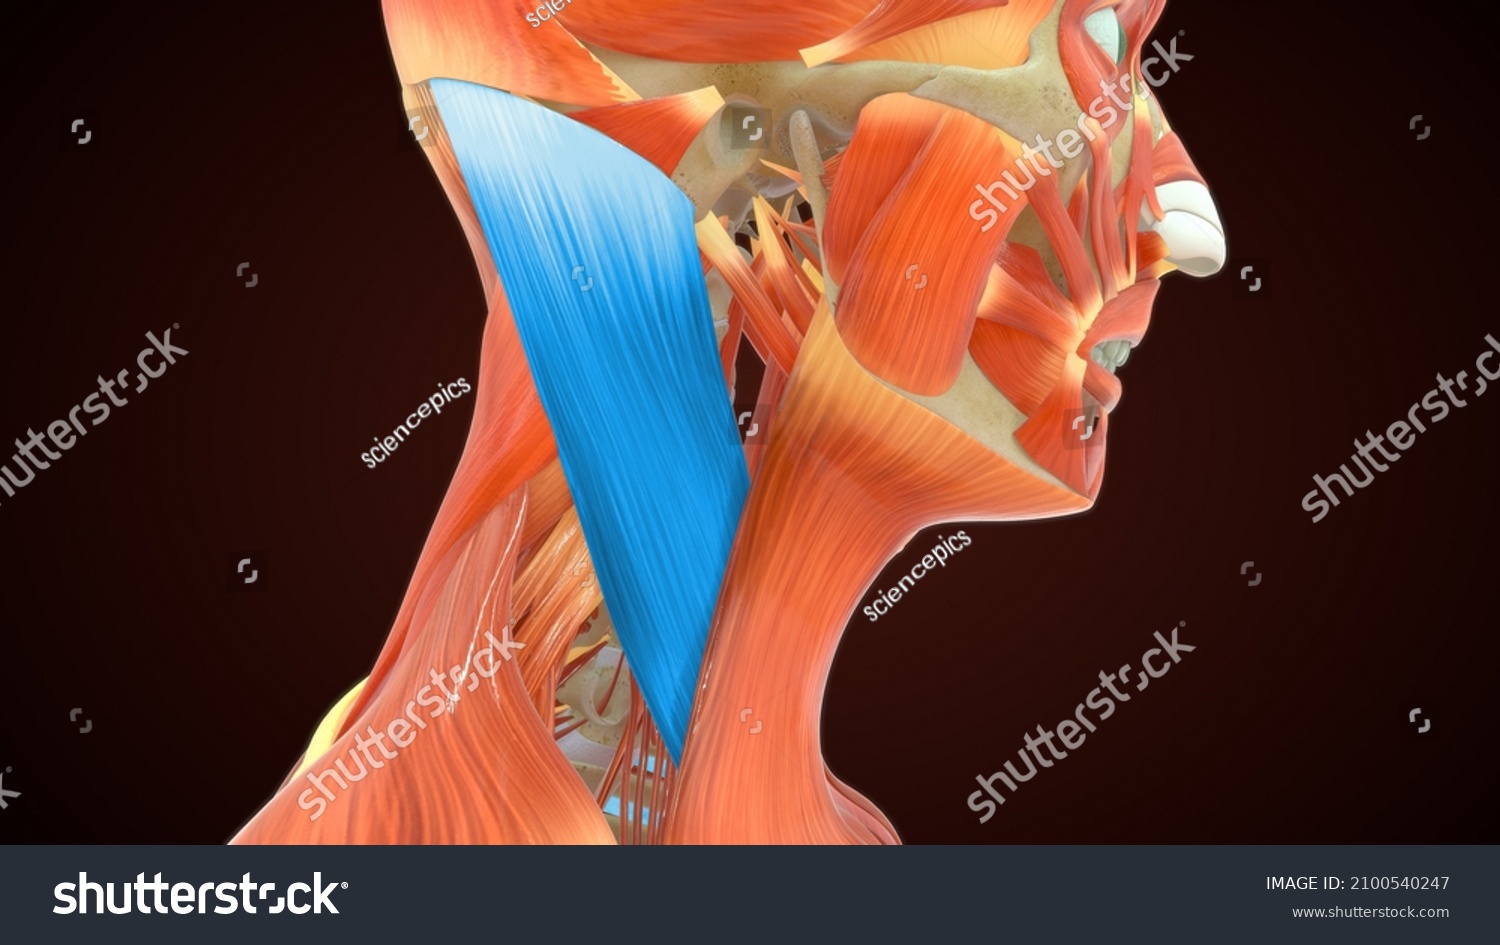 Sternocleidomastoid Muscles Anatomy 3d Illustration Stock Illustration 2100540247 7304